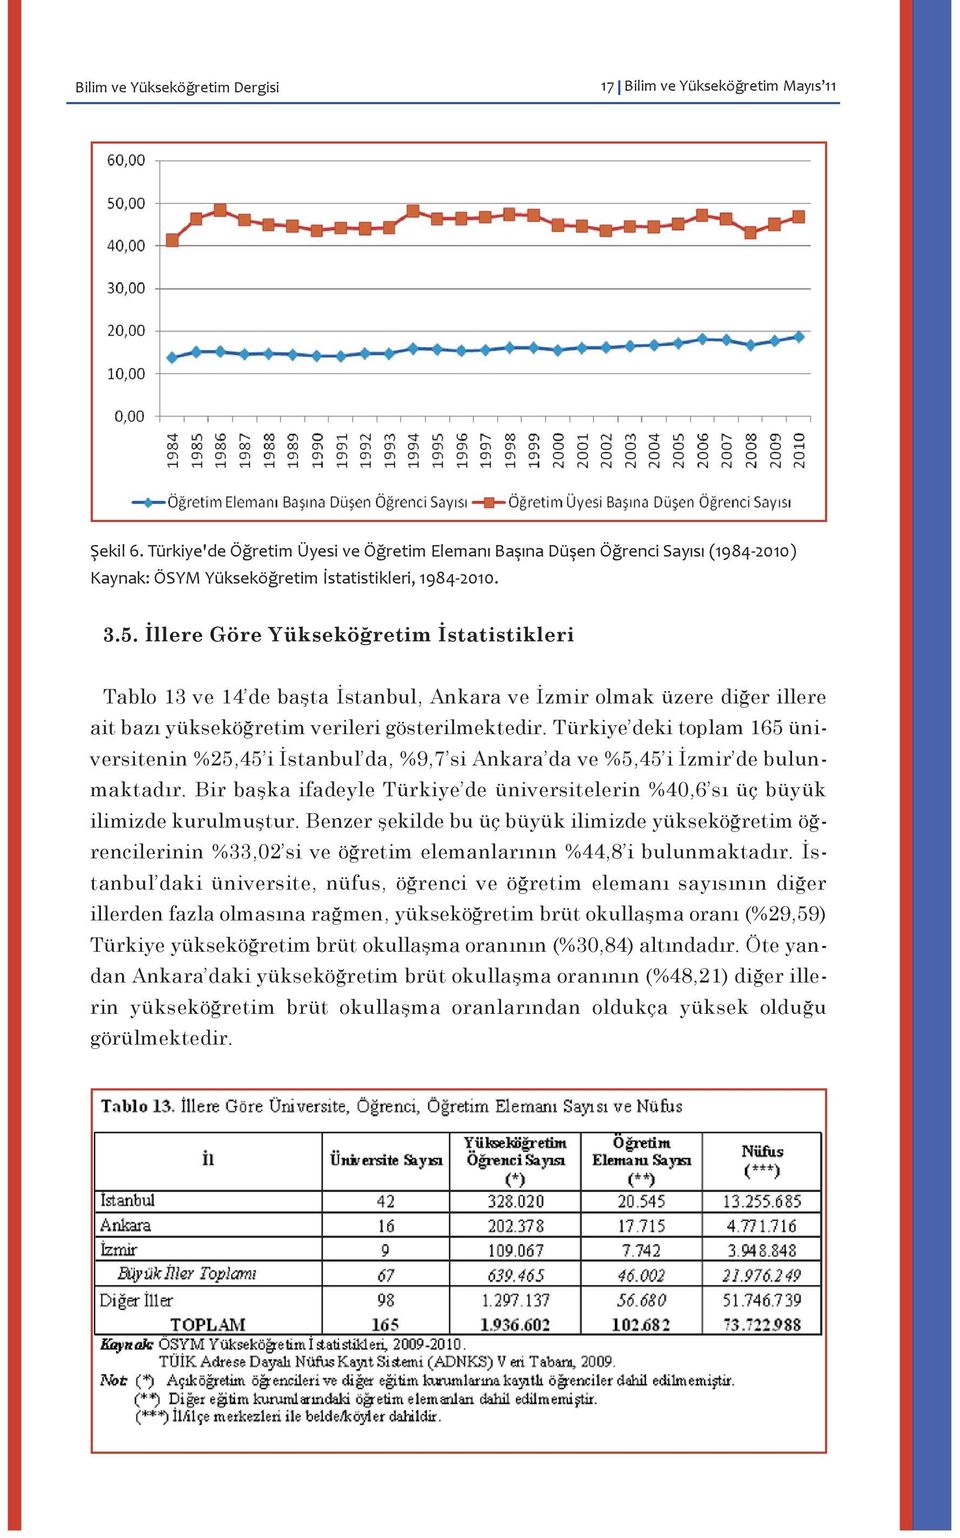 İllere Göre Yükseköğretim İstatistikleri Tablo 13 ve 14 de başta İstanbul, Ankara ve İzmir olmak üzere diğer illere ait bazı yükseköğretim verileri gösterilmektedir.